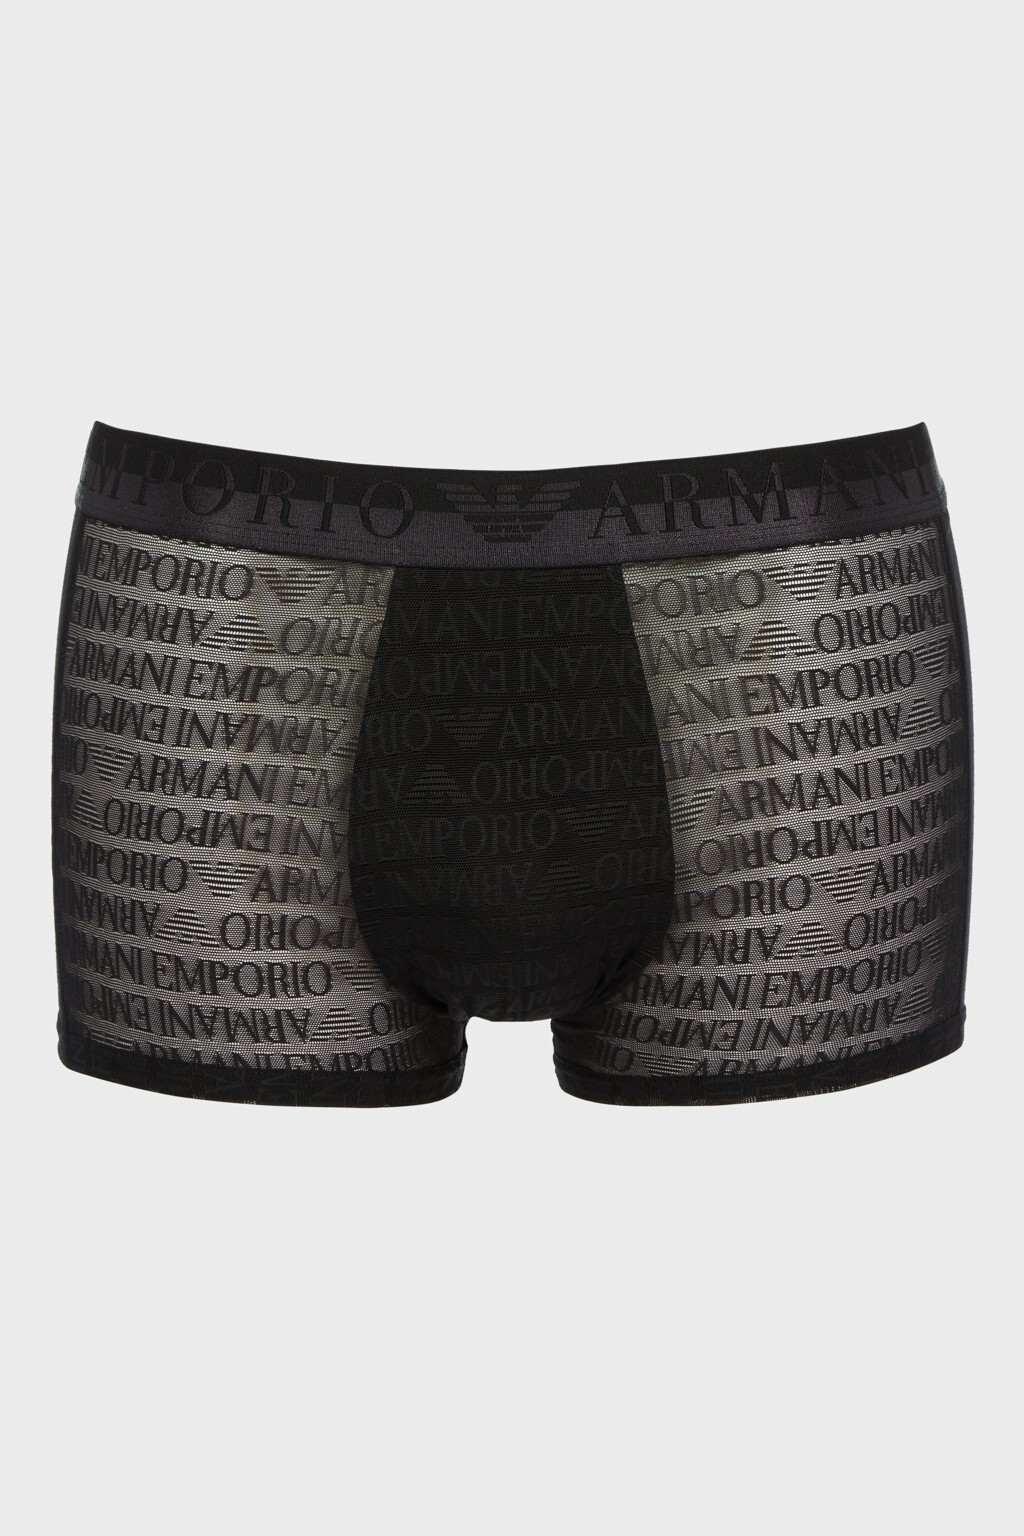 Pánské boxerky 112051 3F527 00020 černé - Emporio Armani L